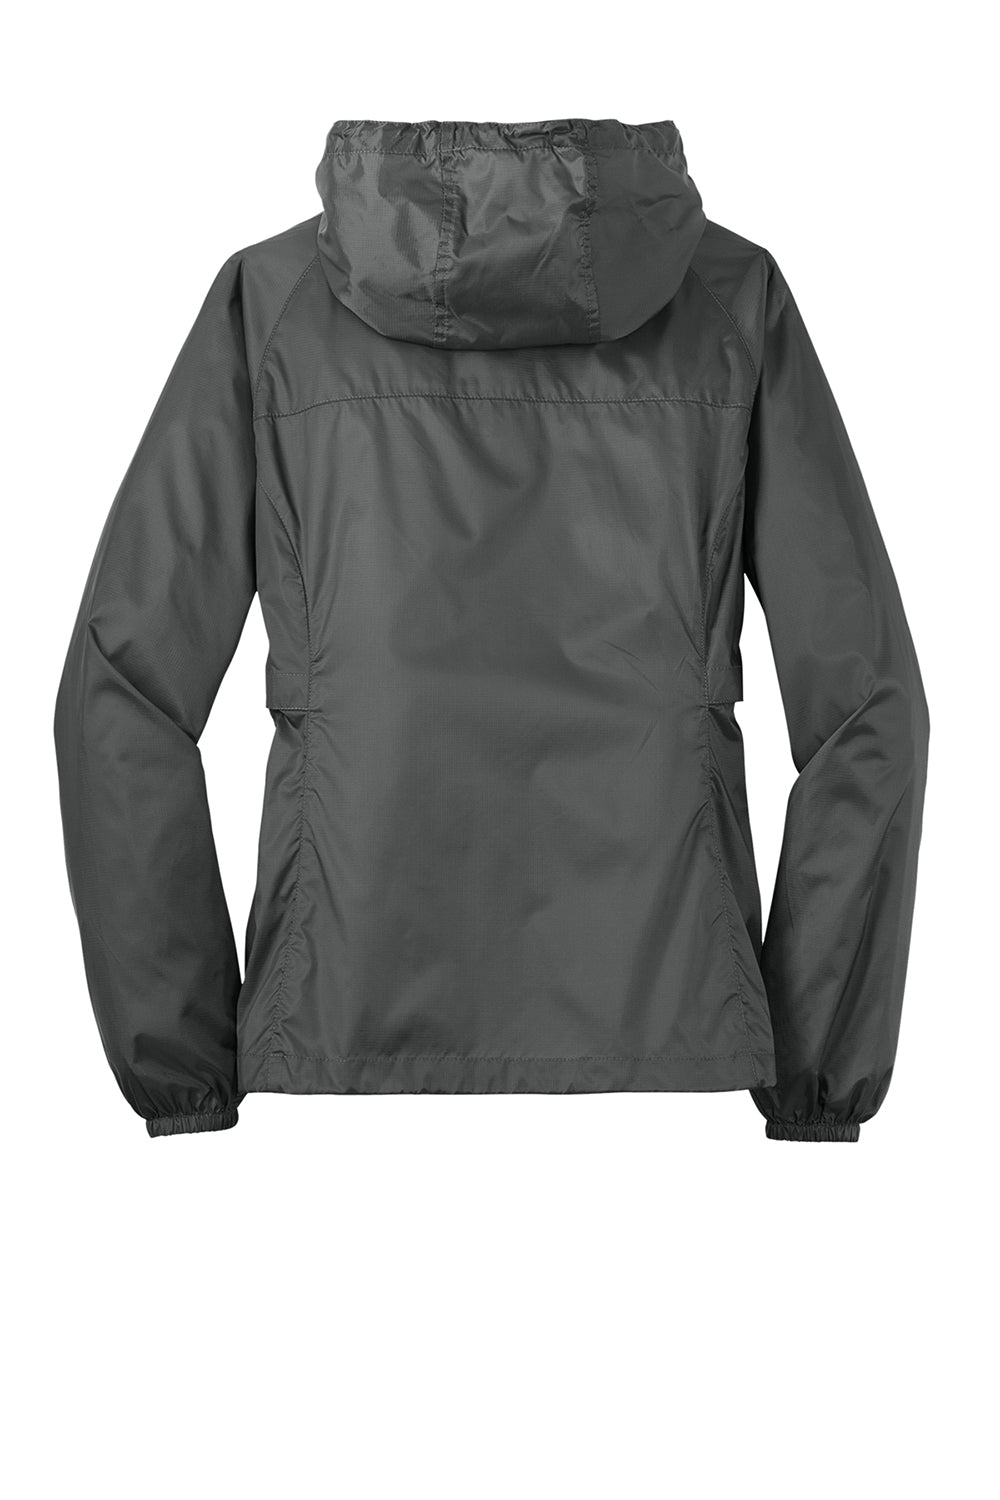 Eddie Bauer EB501 Womens Packable Wind Resistant Full Zip Hooded Jacket Steel Grey Flat Back